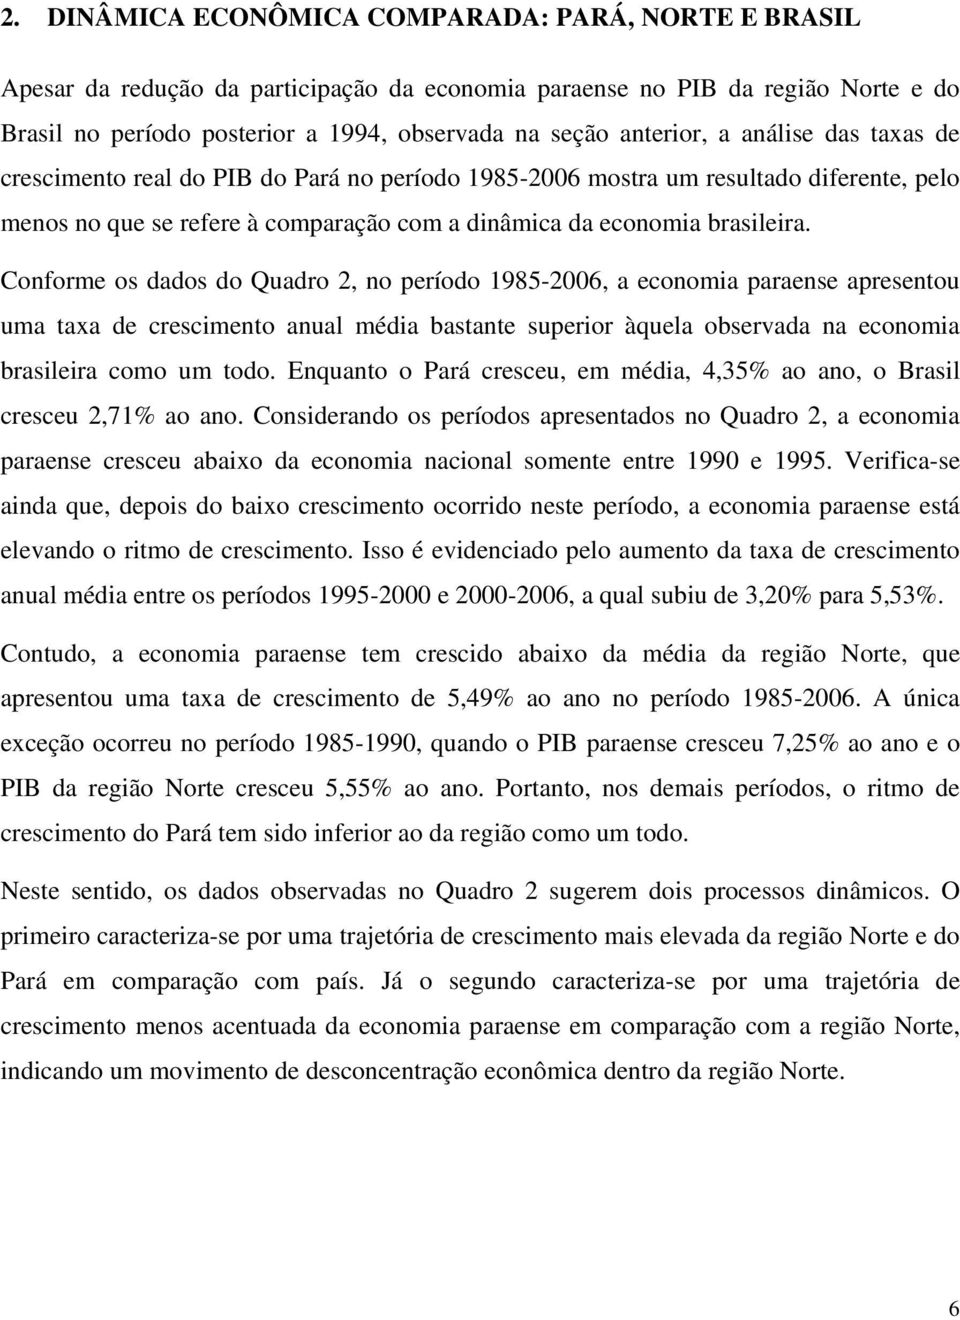 Conforme os dados do Quadro 2, no período 1985-2006, a economia paraense apresentou uma taxa de crescimento anual média bastante superior àquela observada na economia brasileira como um todo.